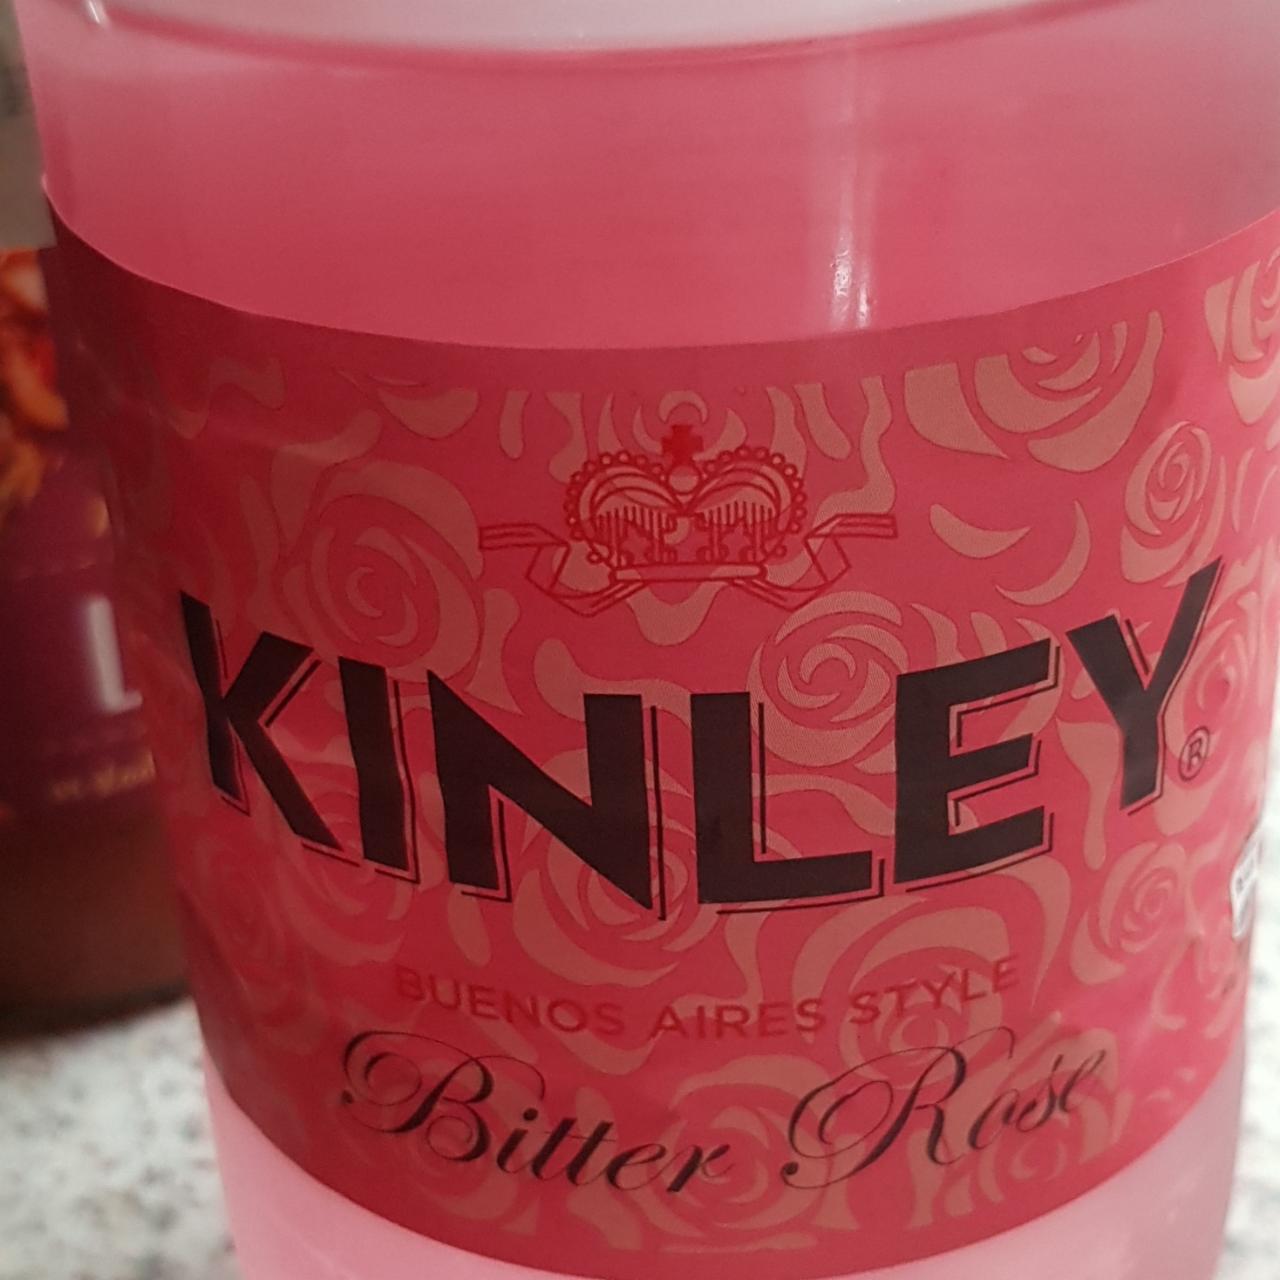 Zdjęcia - Kinley Bitter Rose Napój gazowany 500 ml